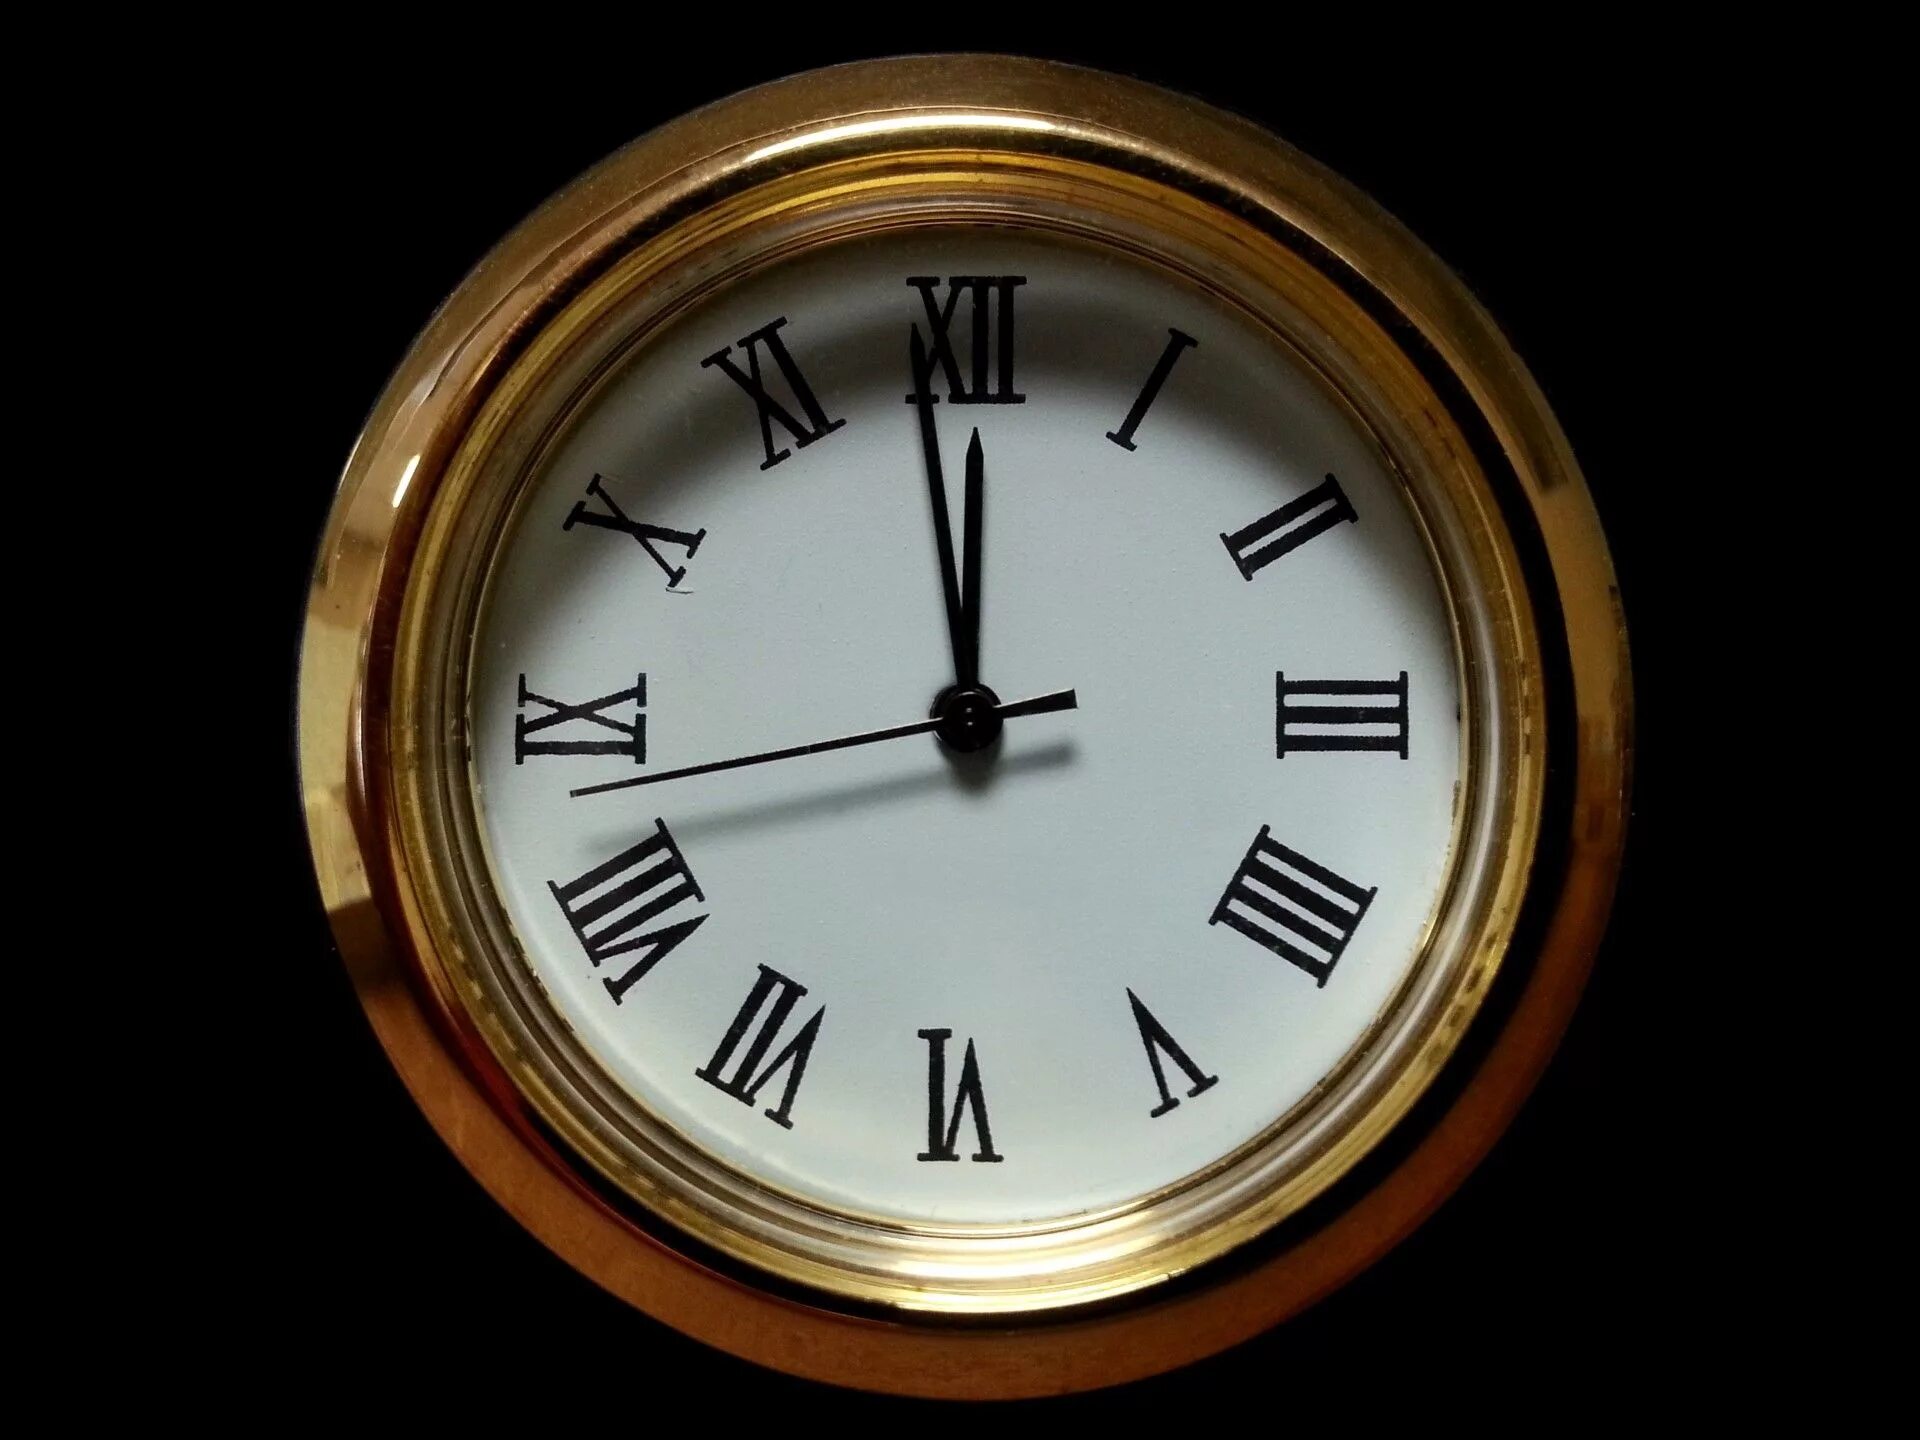 Картинка часы 12. Старинные часы. Часы полночь. Часы показывают полночь. Изображение часов.